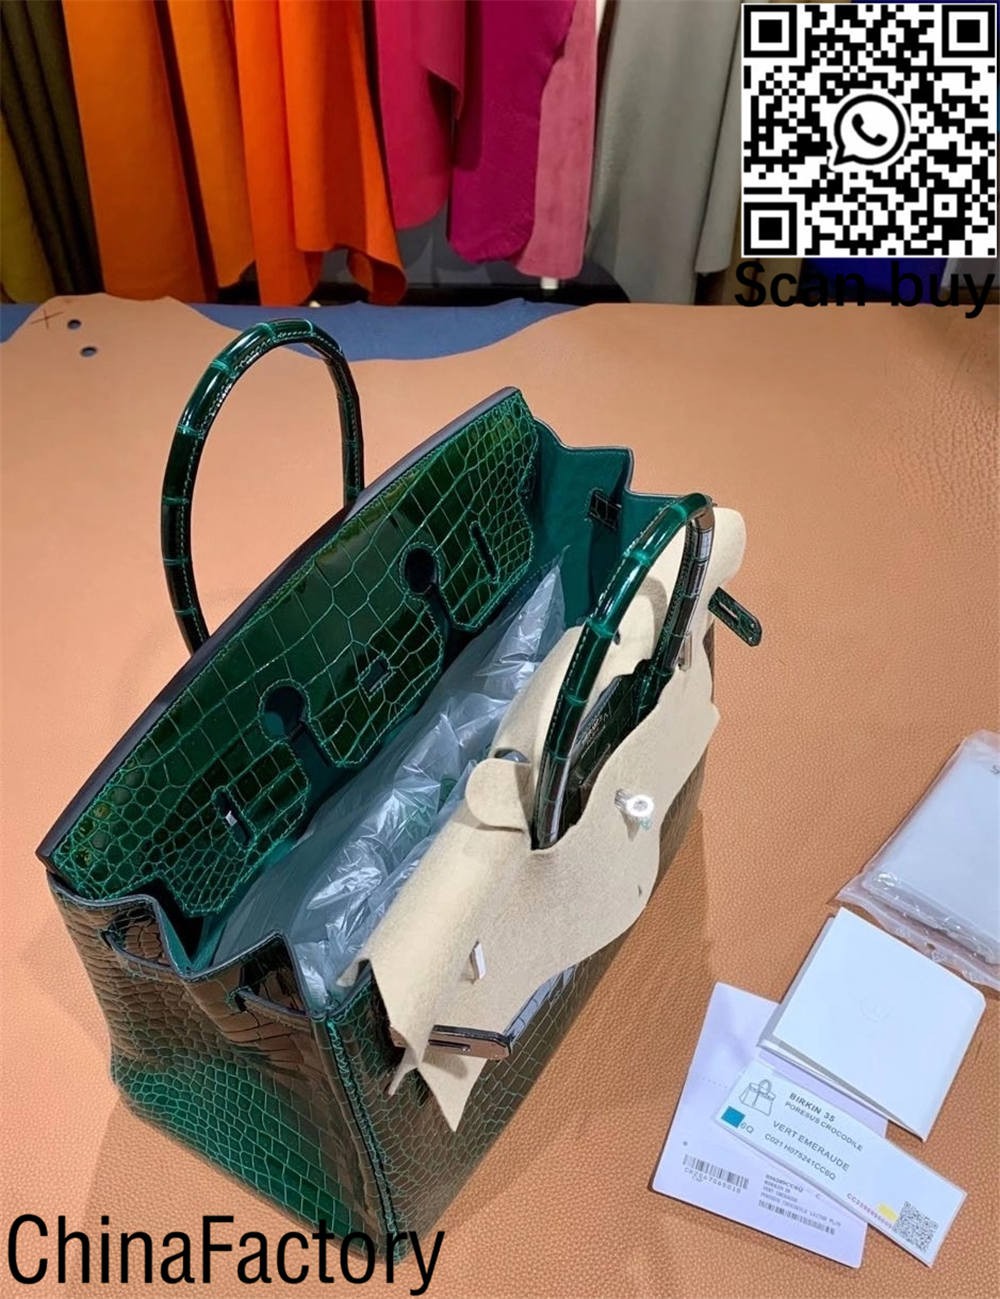 Top Qualitéit Hermes Krokodil Birkin Bag Replica Australien (2022 aktualiséiert)-Bescht Qualitéit Fake Louis Vuitton Bag Online Store, Replica Designer Bag ru